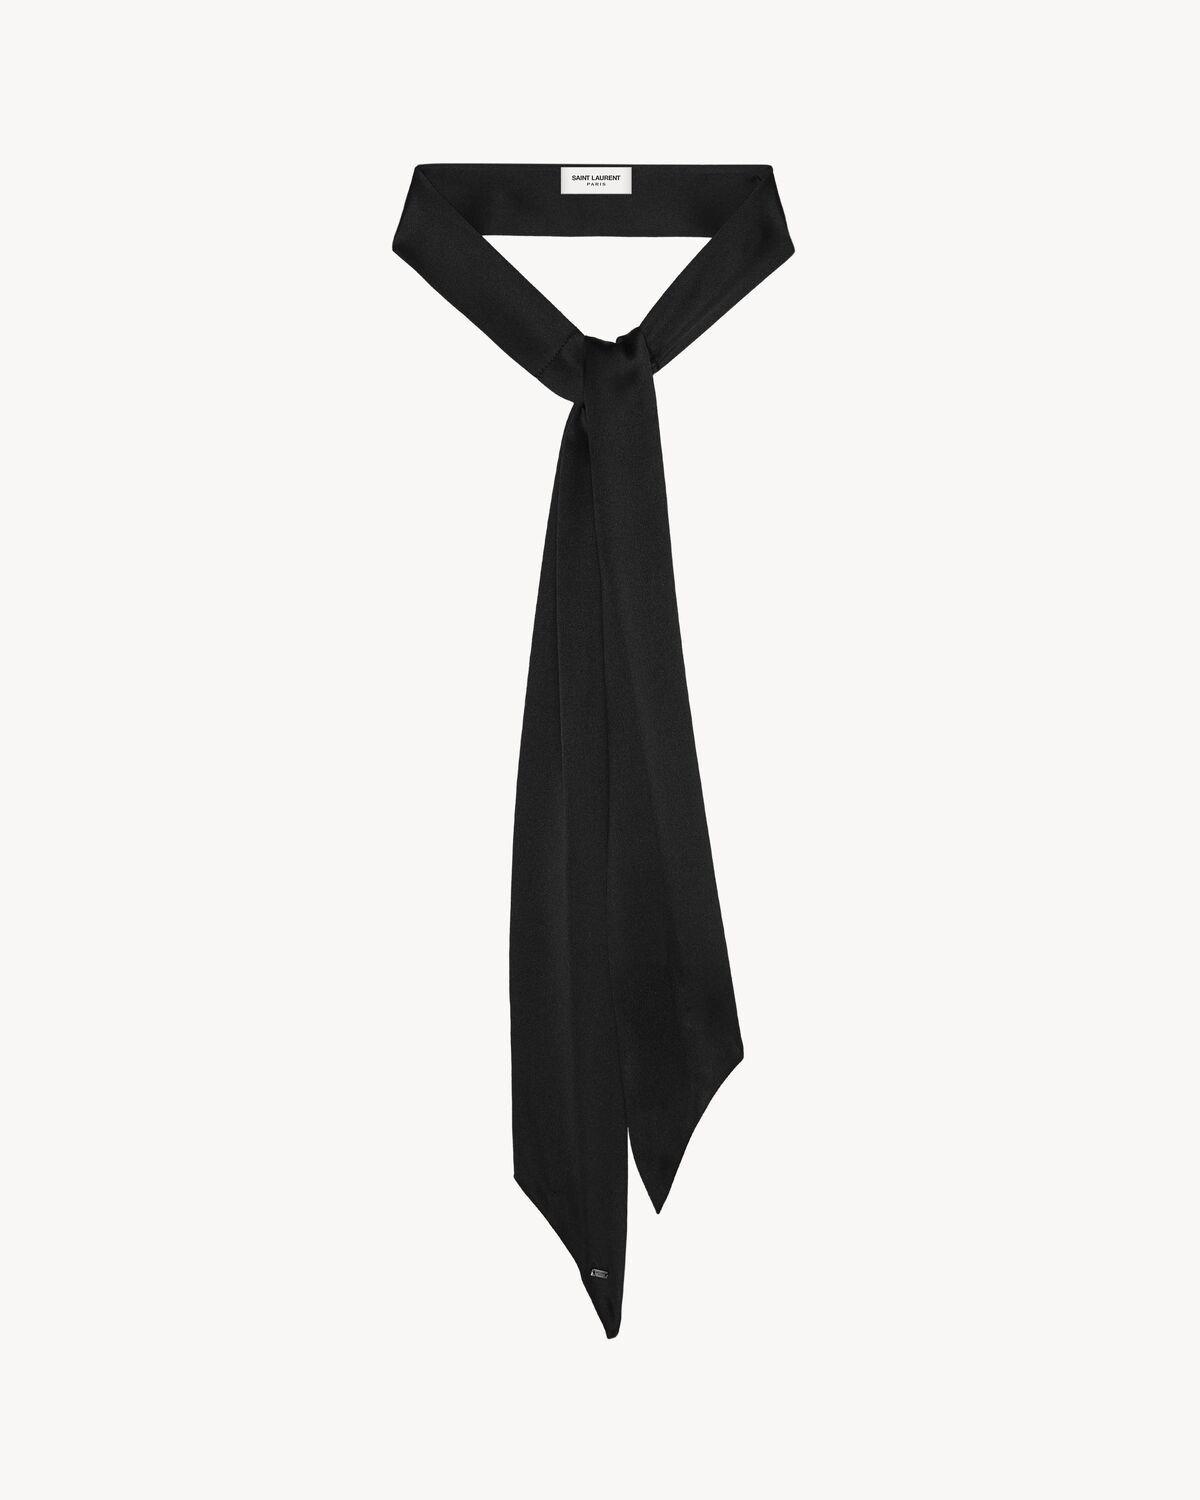 絲緞短款Lavallière領帶式圍巾